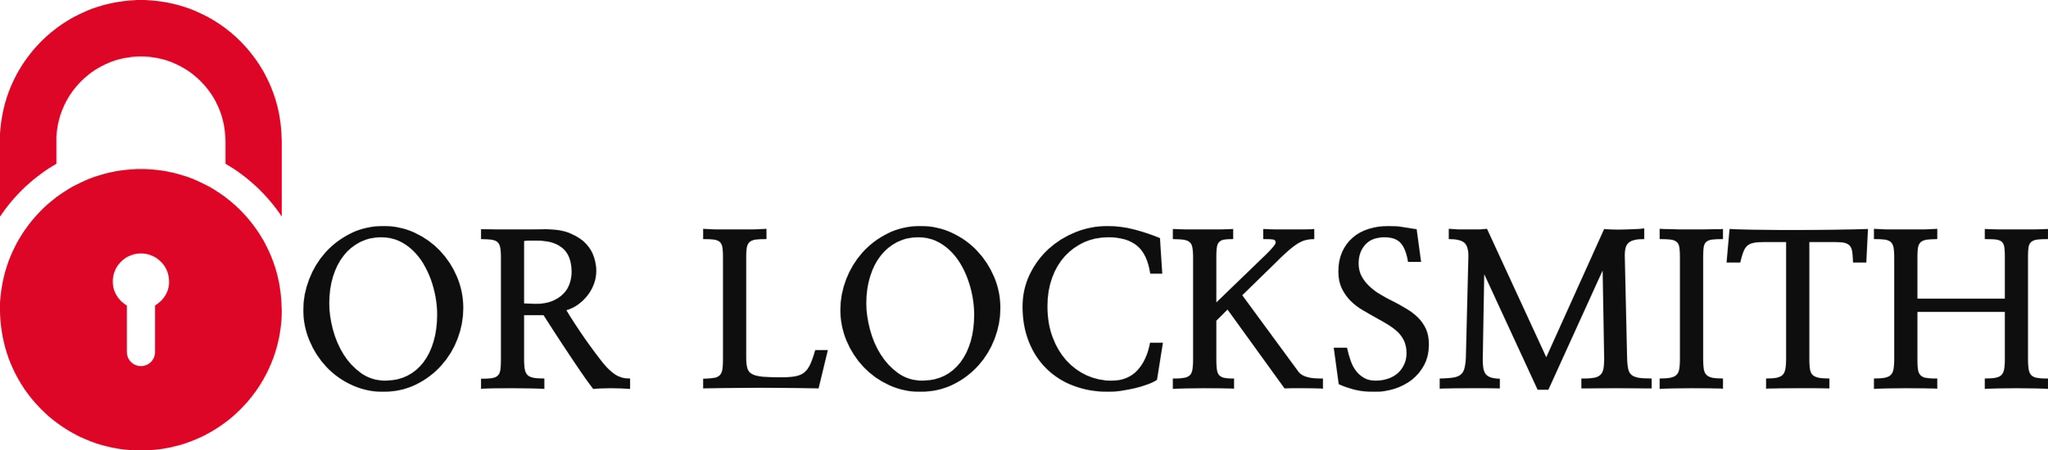 Locksmith Services - Tucson, Oro Valley, & Marana - 520-488-0000